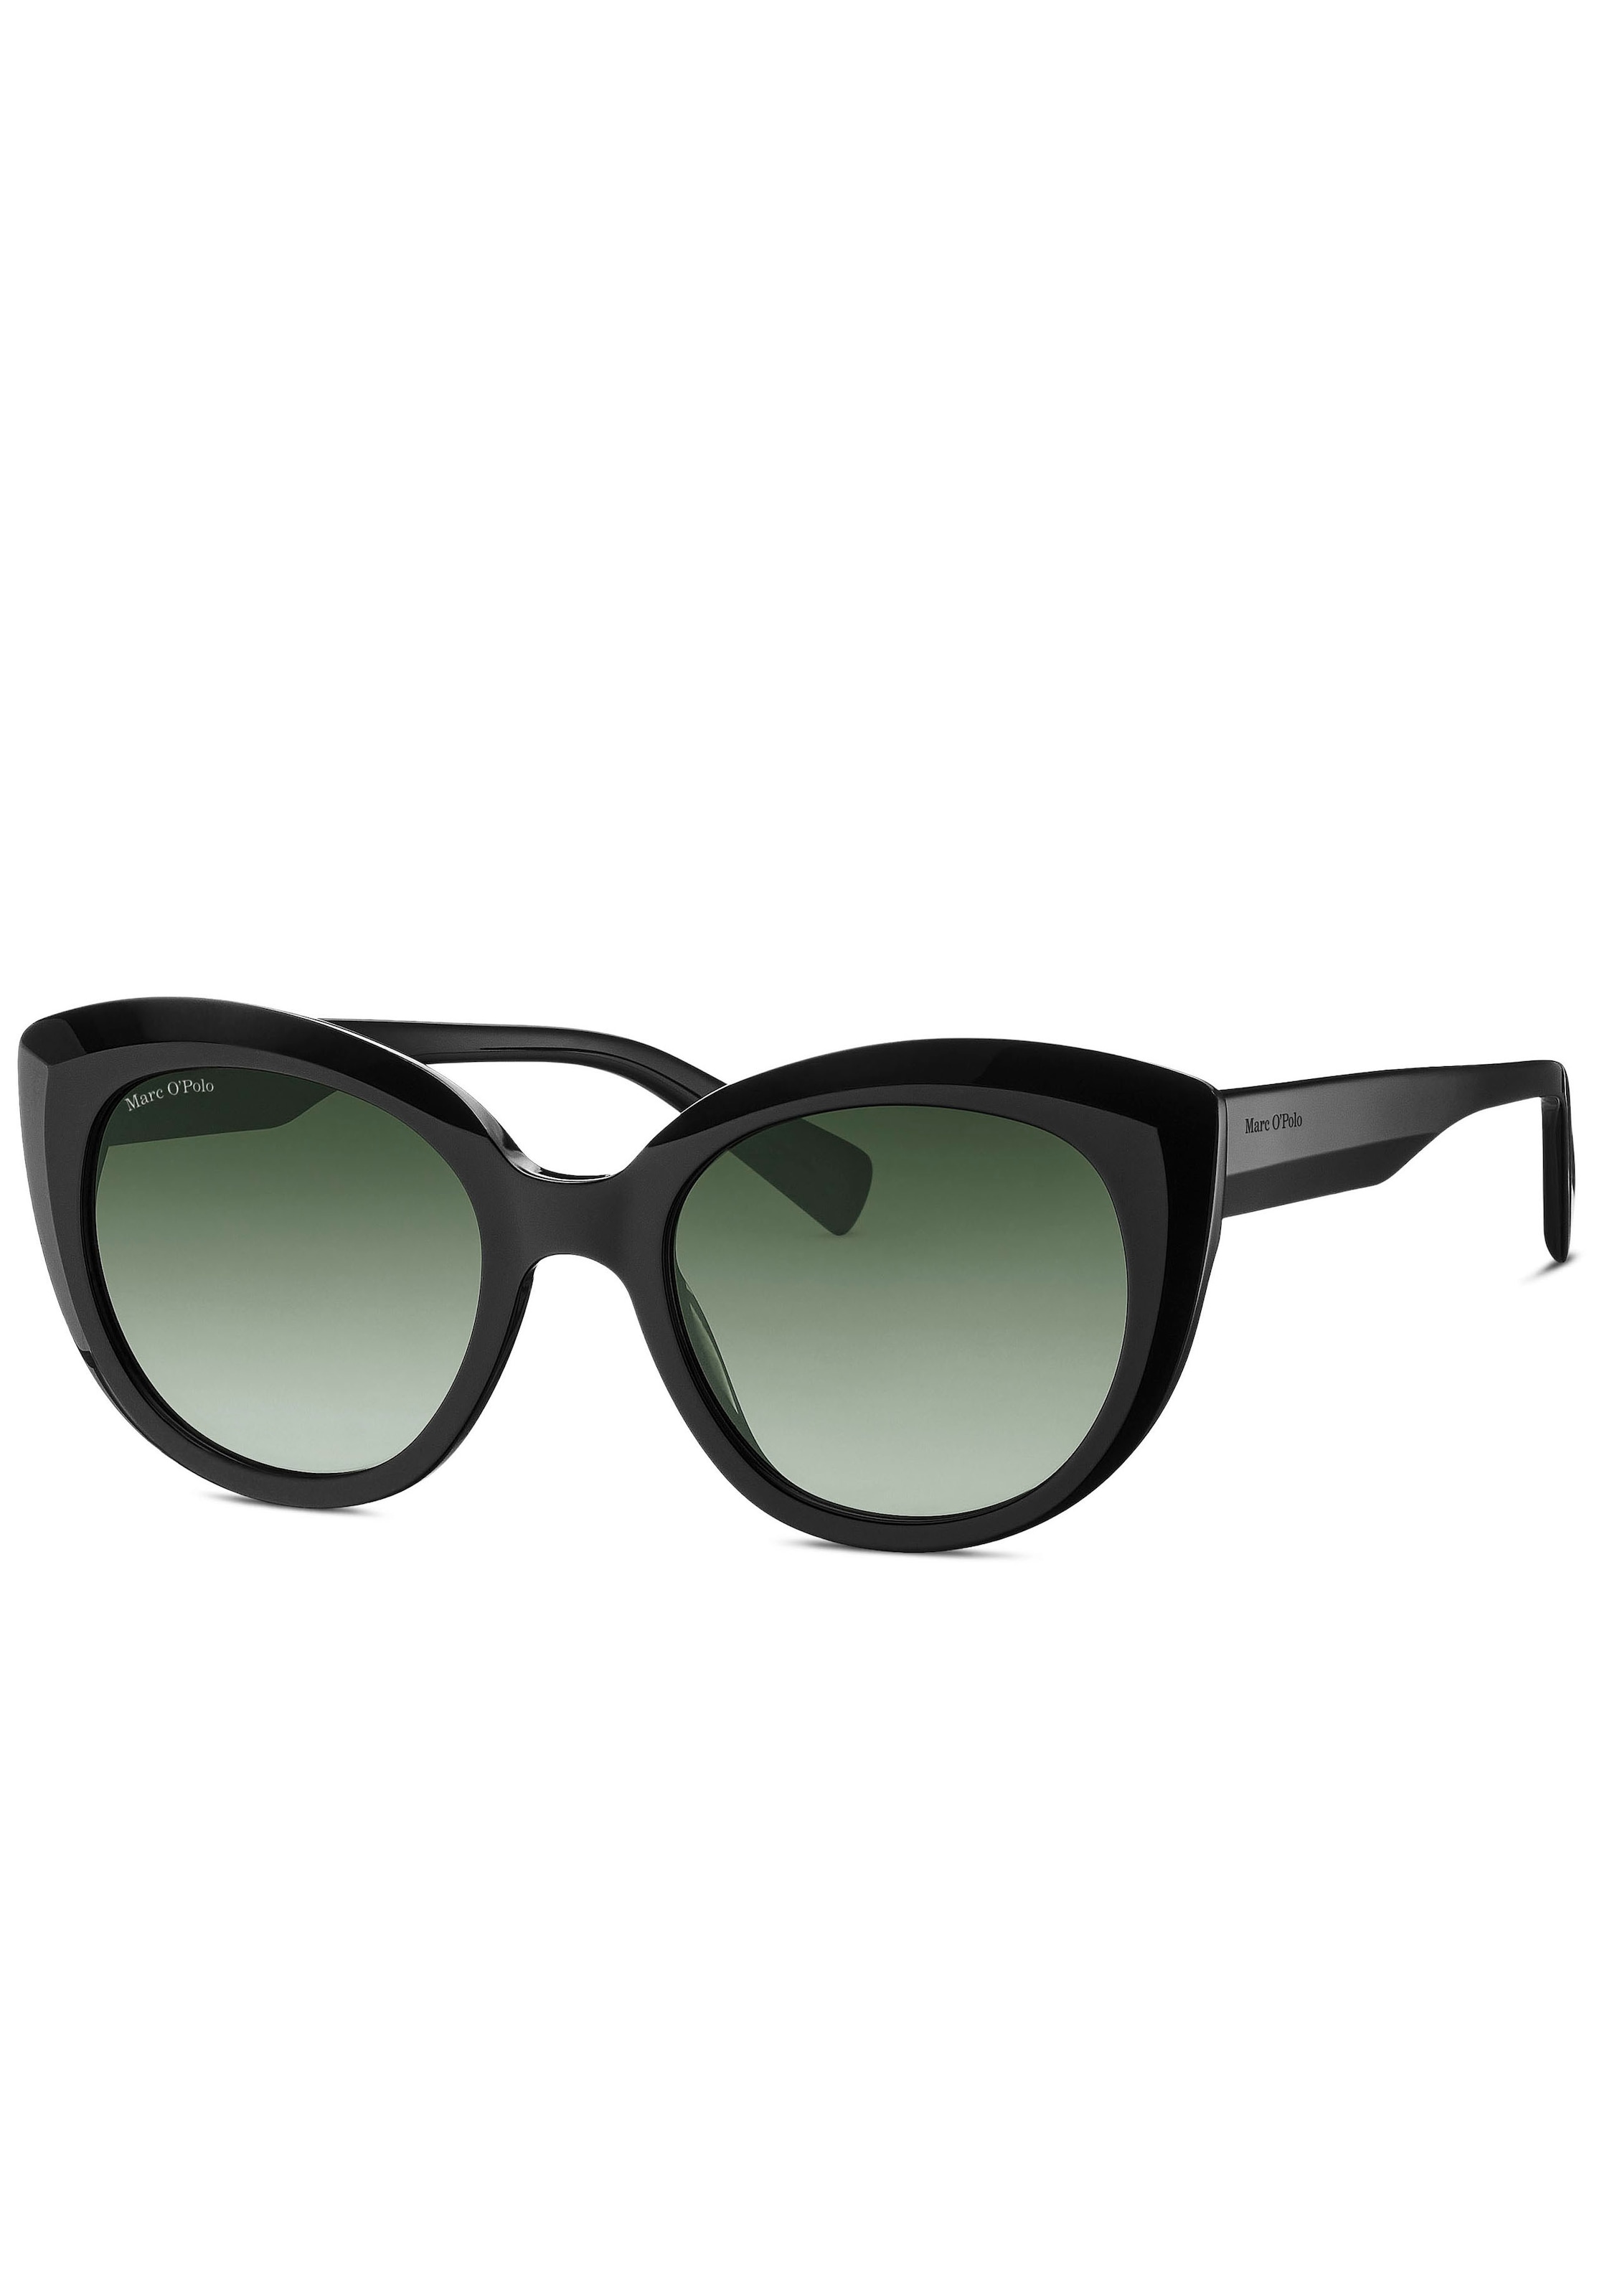 Sonnenbrillen Damen SALE & Angebote ▷ BAUR günstige | Outlet